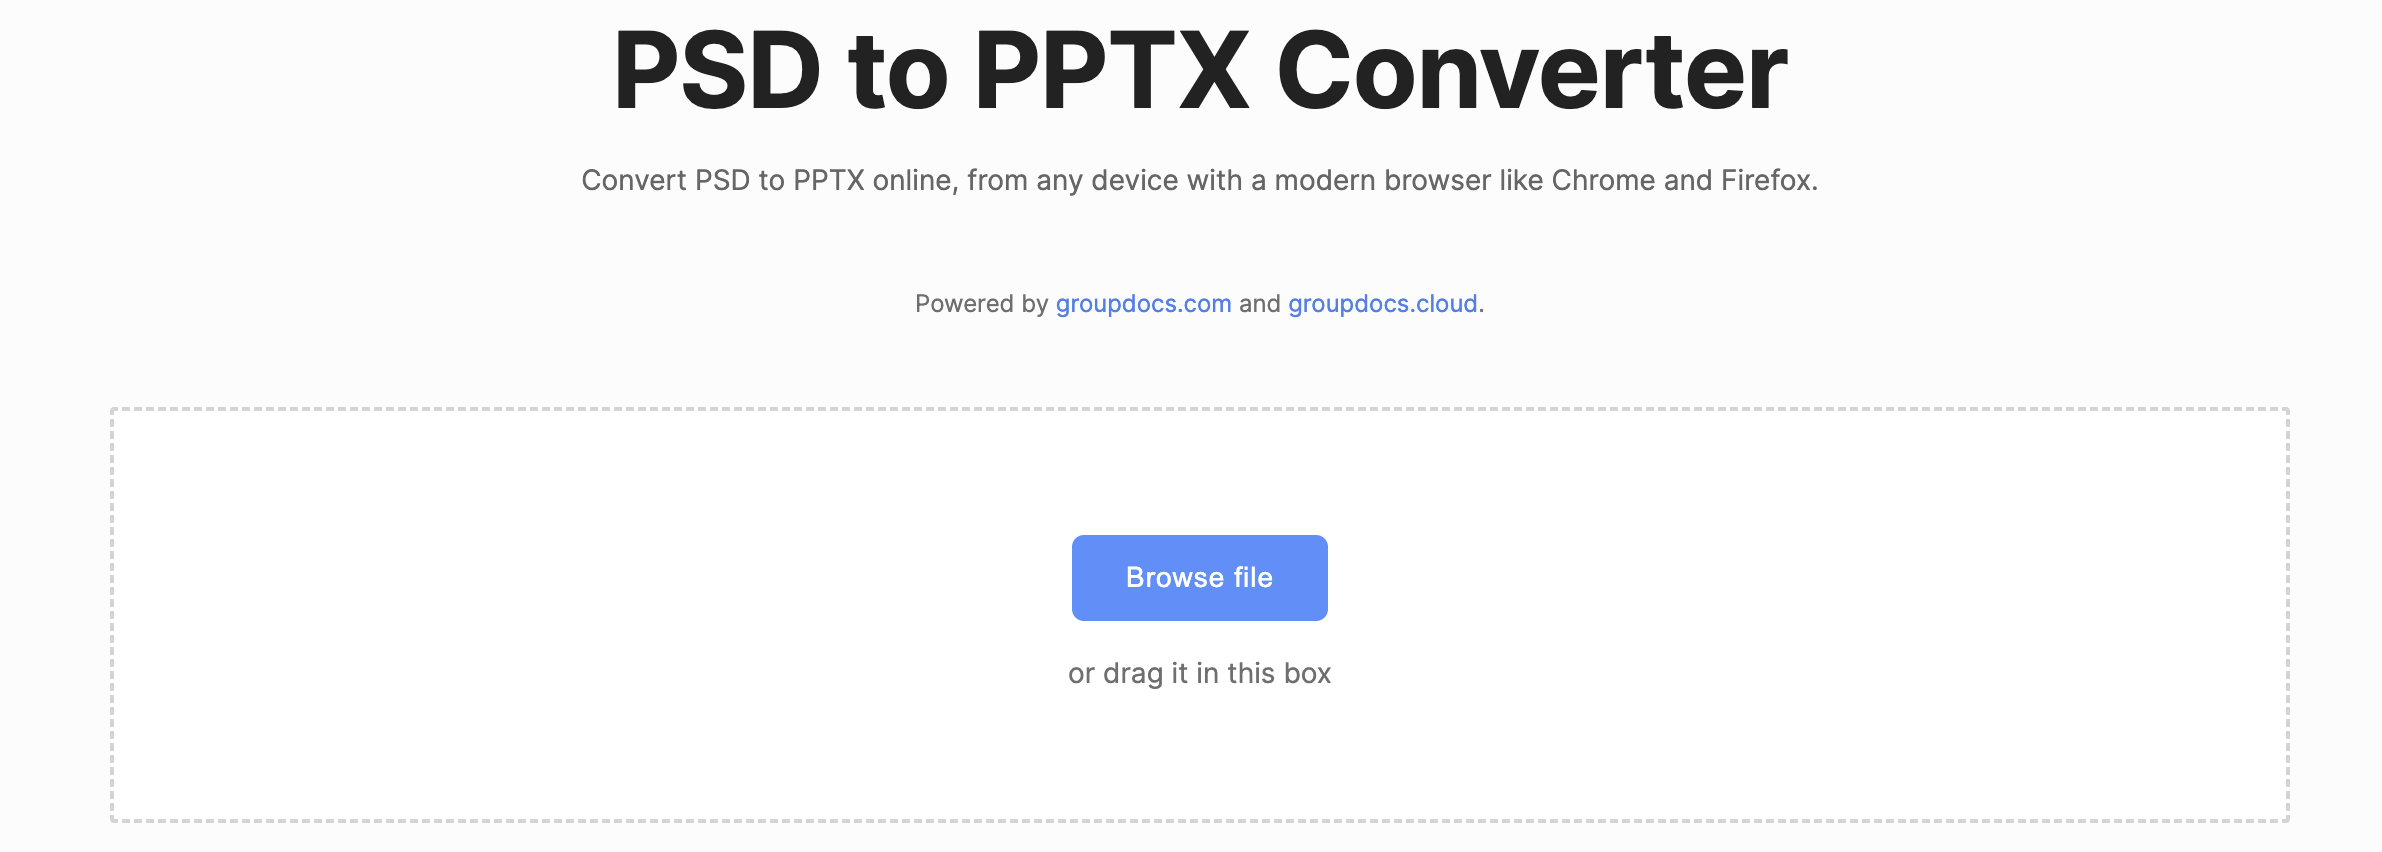 psd'yi çevrimiçi pptx'e dönüştürün